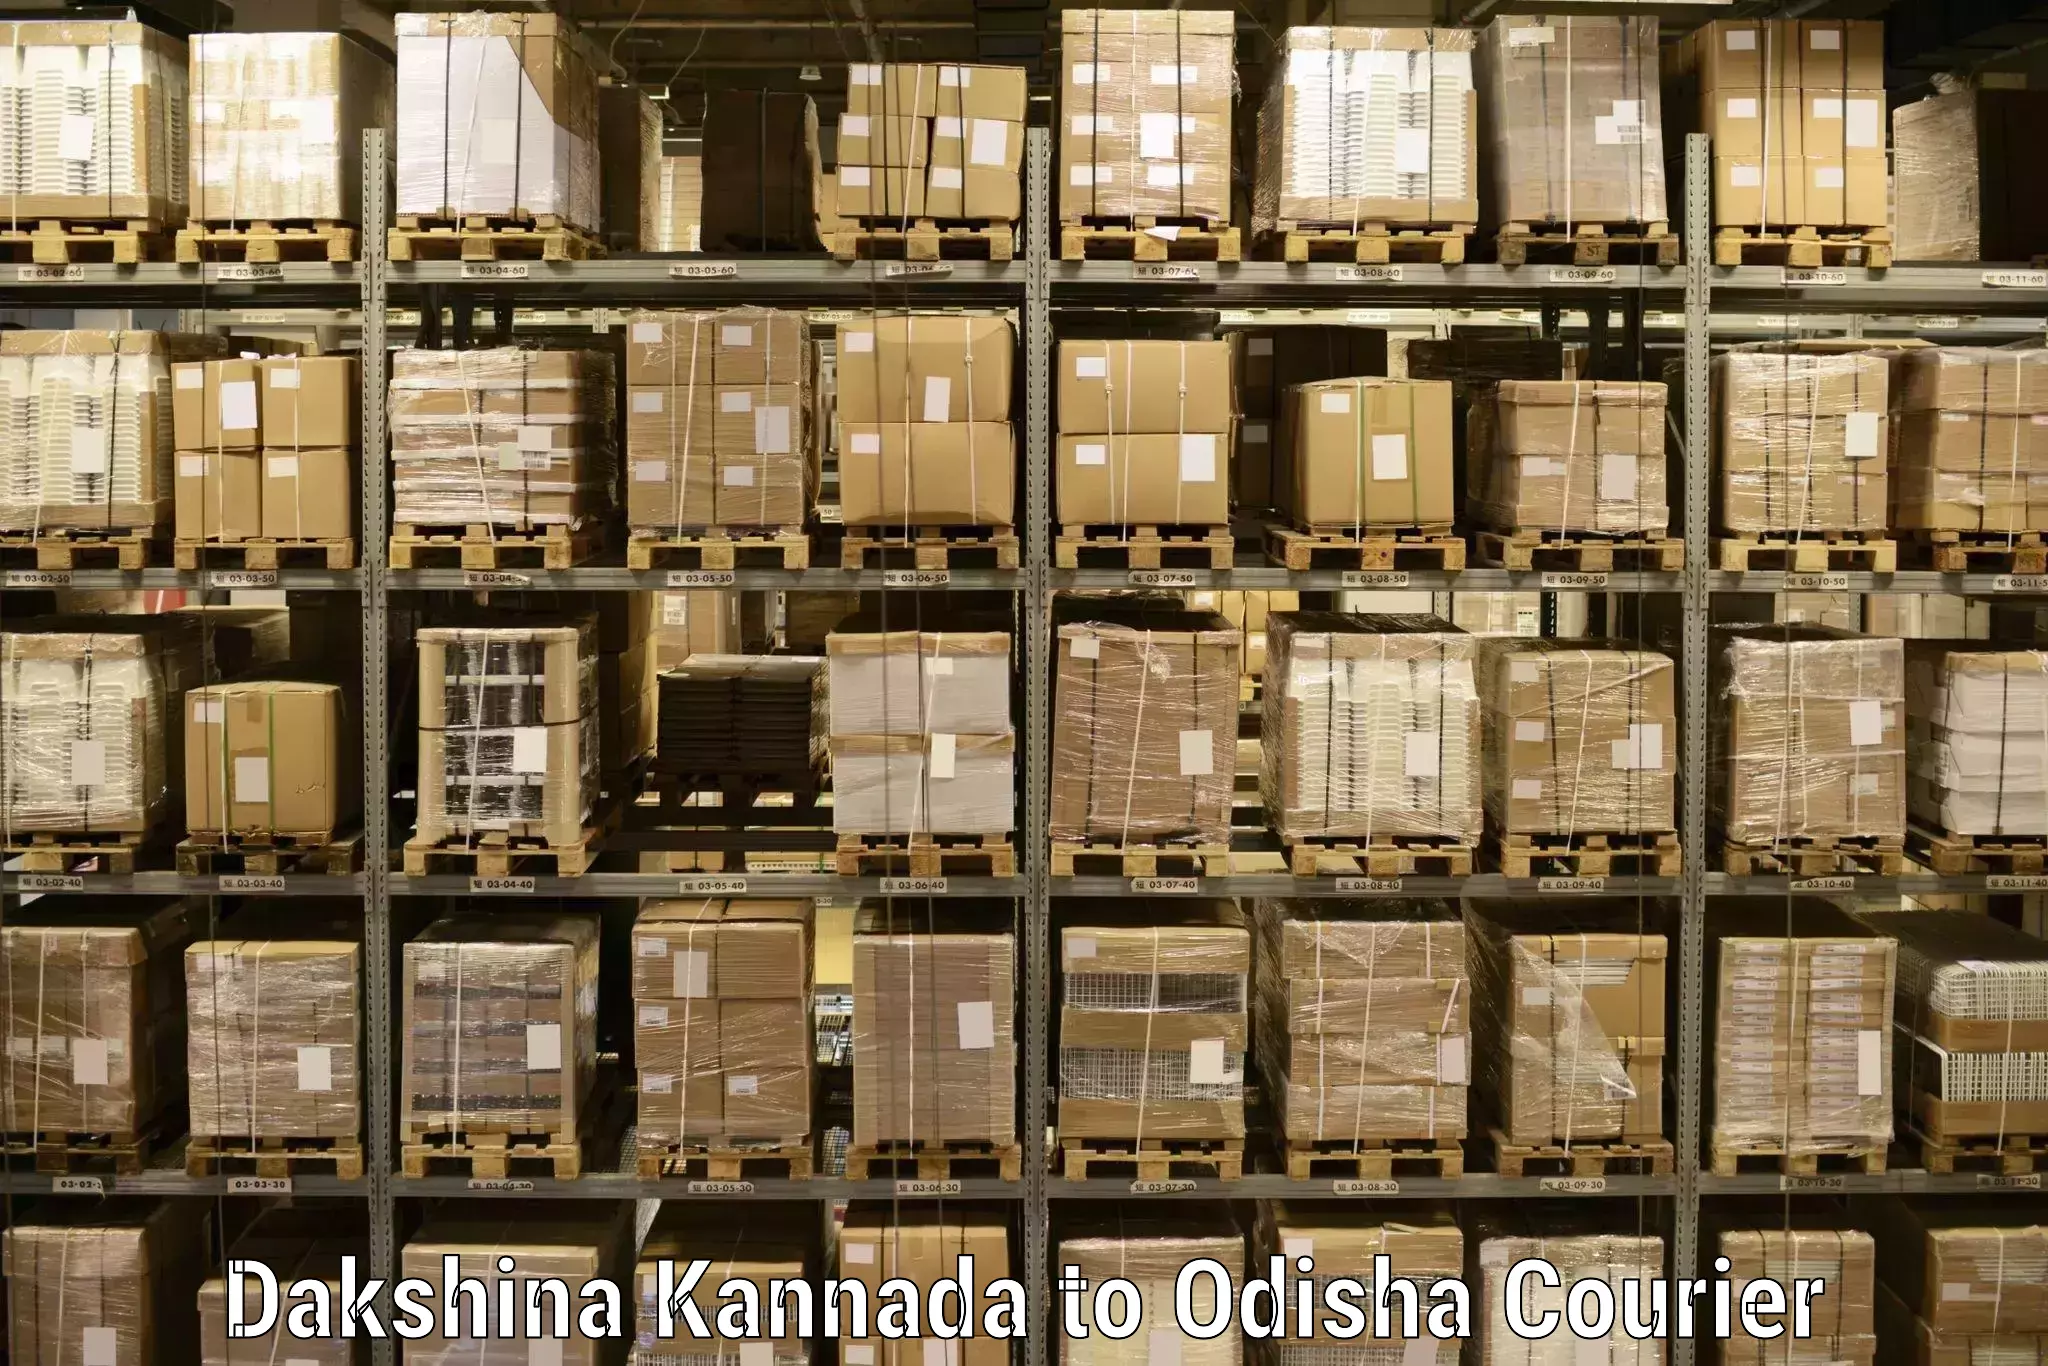 Modern courier technology Dakshina Kannada to Badagada